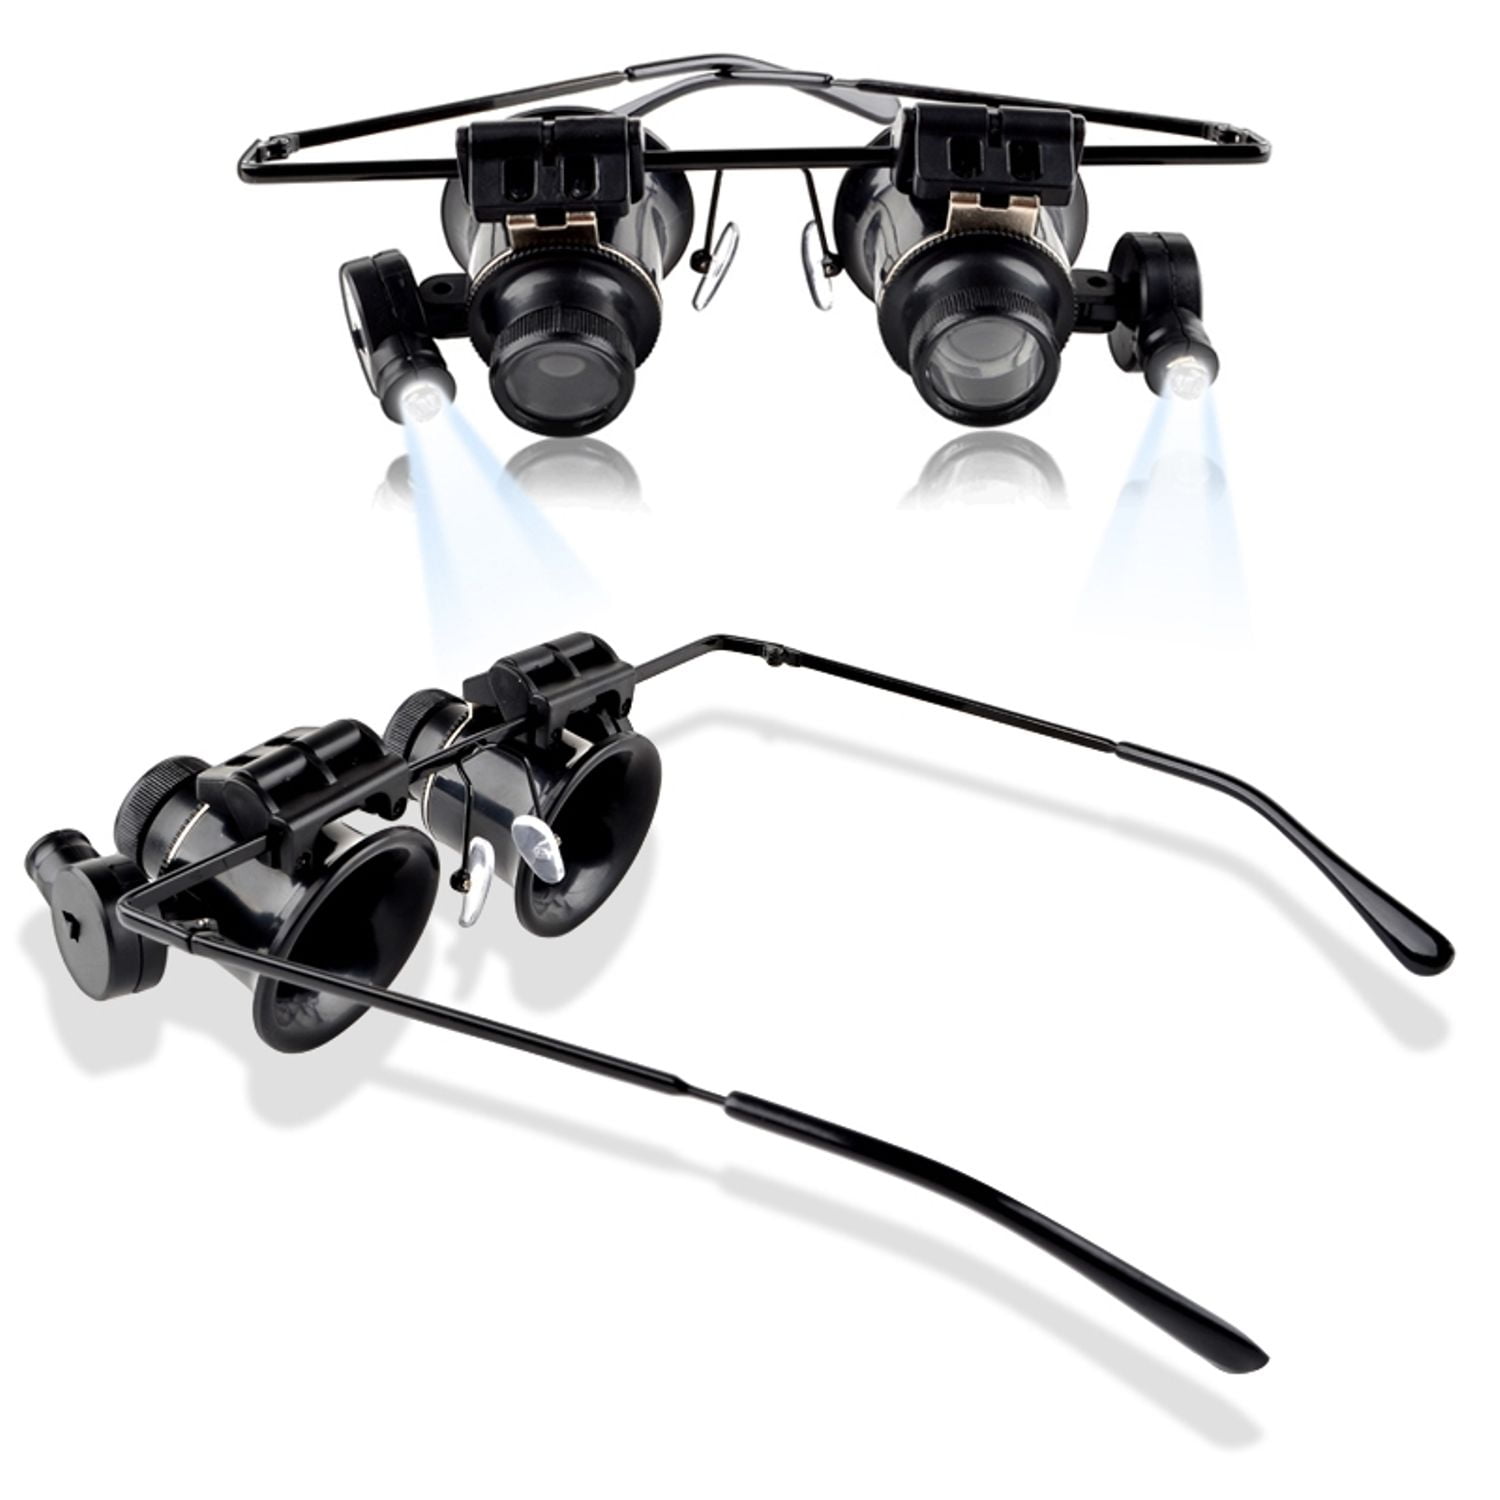 Insten 20x Magnifier Magnifying Led Light Glasses Type Eye Glass